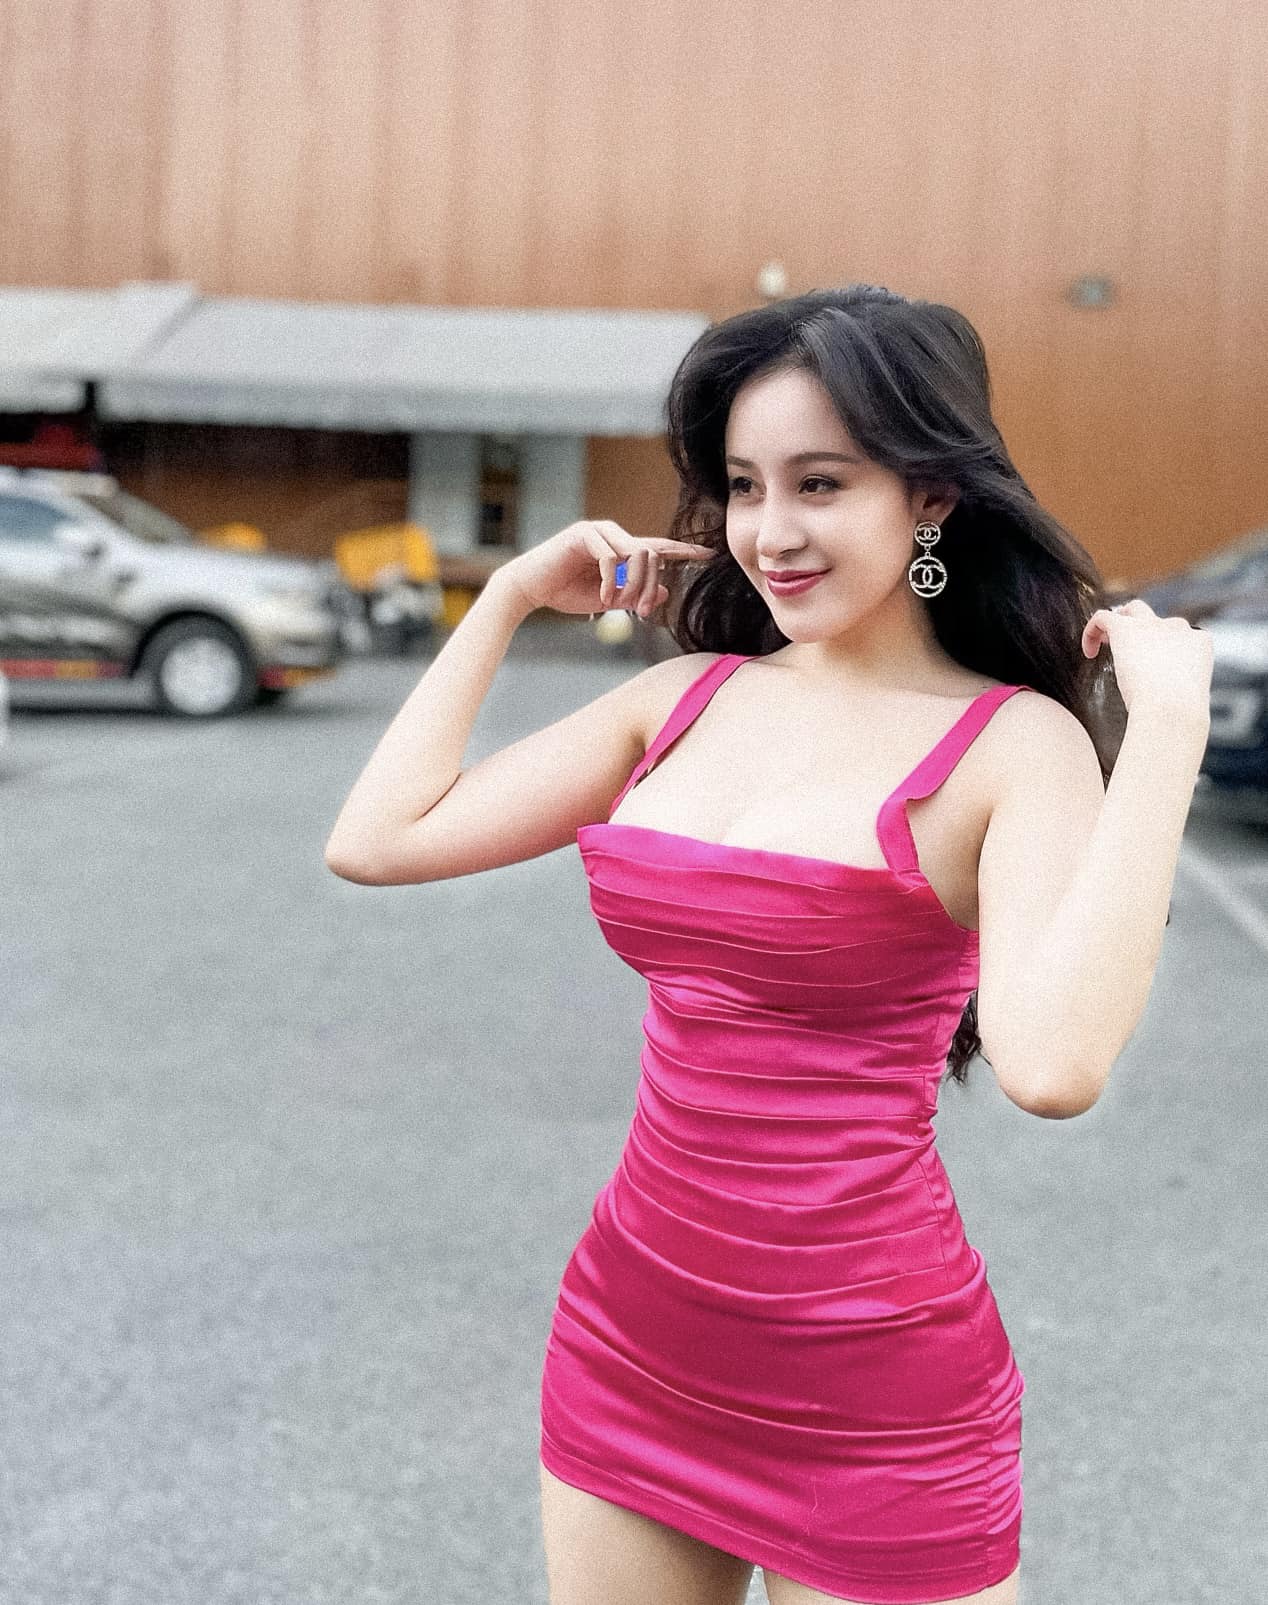 Động thái mới nhất của hotgirl bà Tưng sau khi bị hack Facebook, phát tán ảnh nhạy cảm